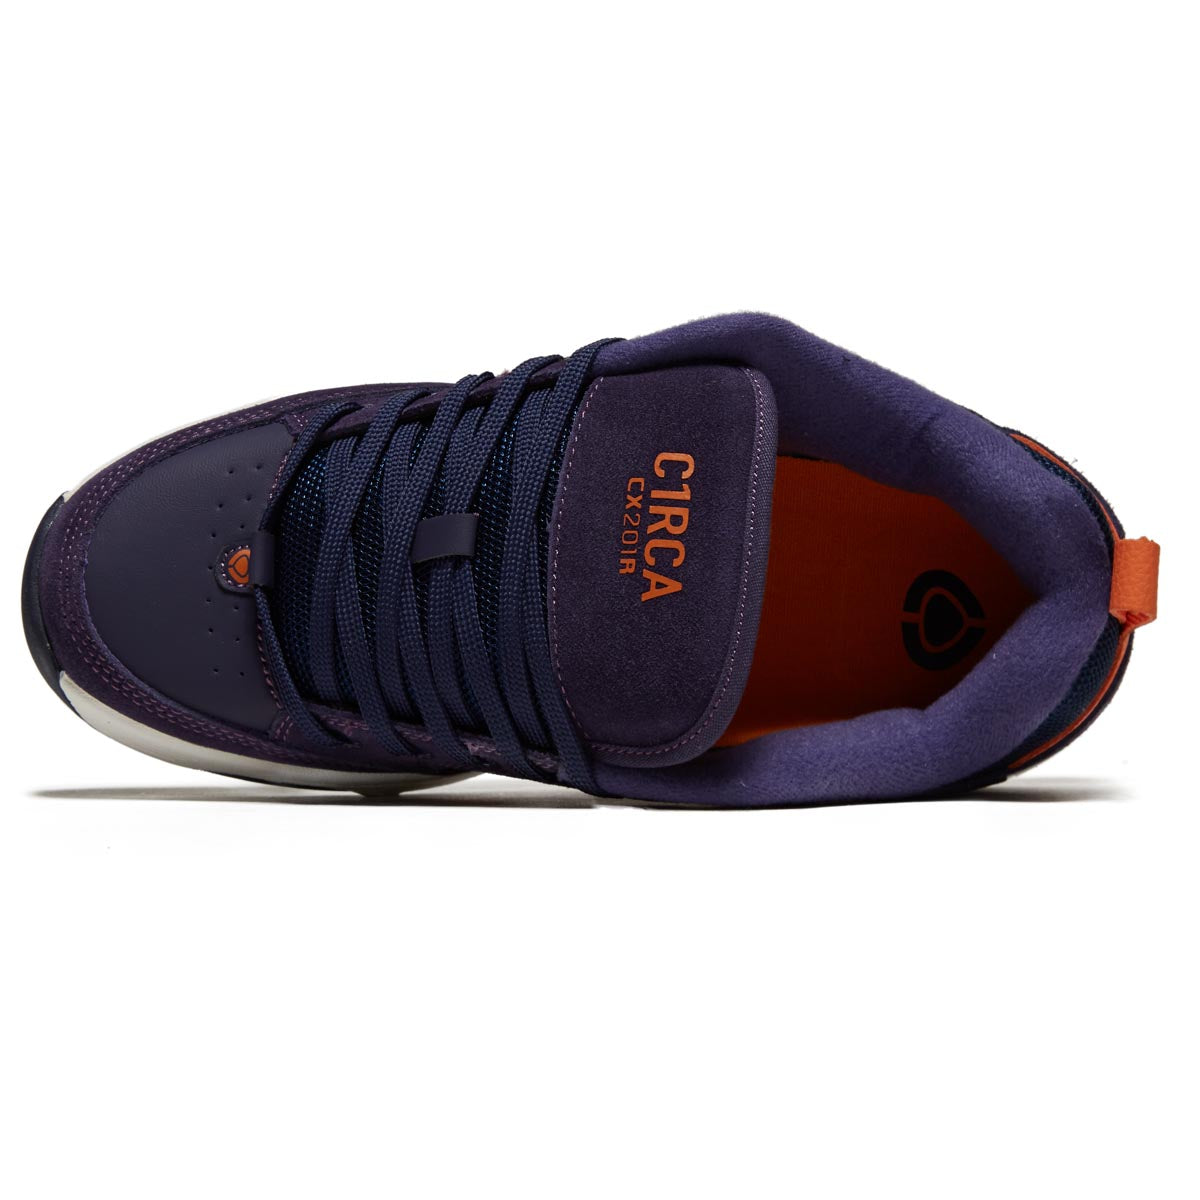 C1rca Cx201r Shoes - Navy/Orange image 3